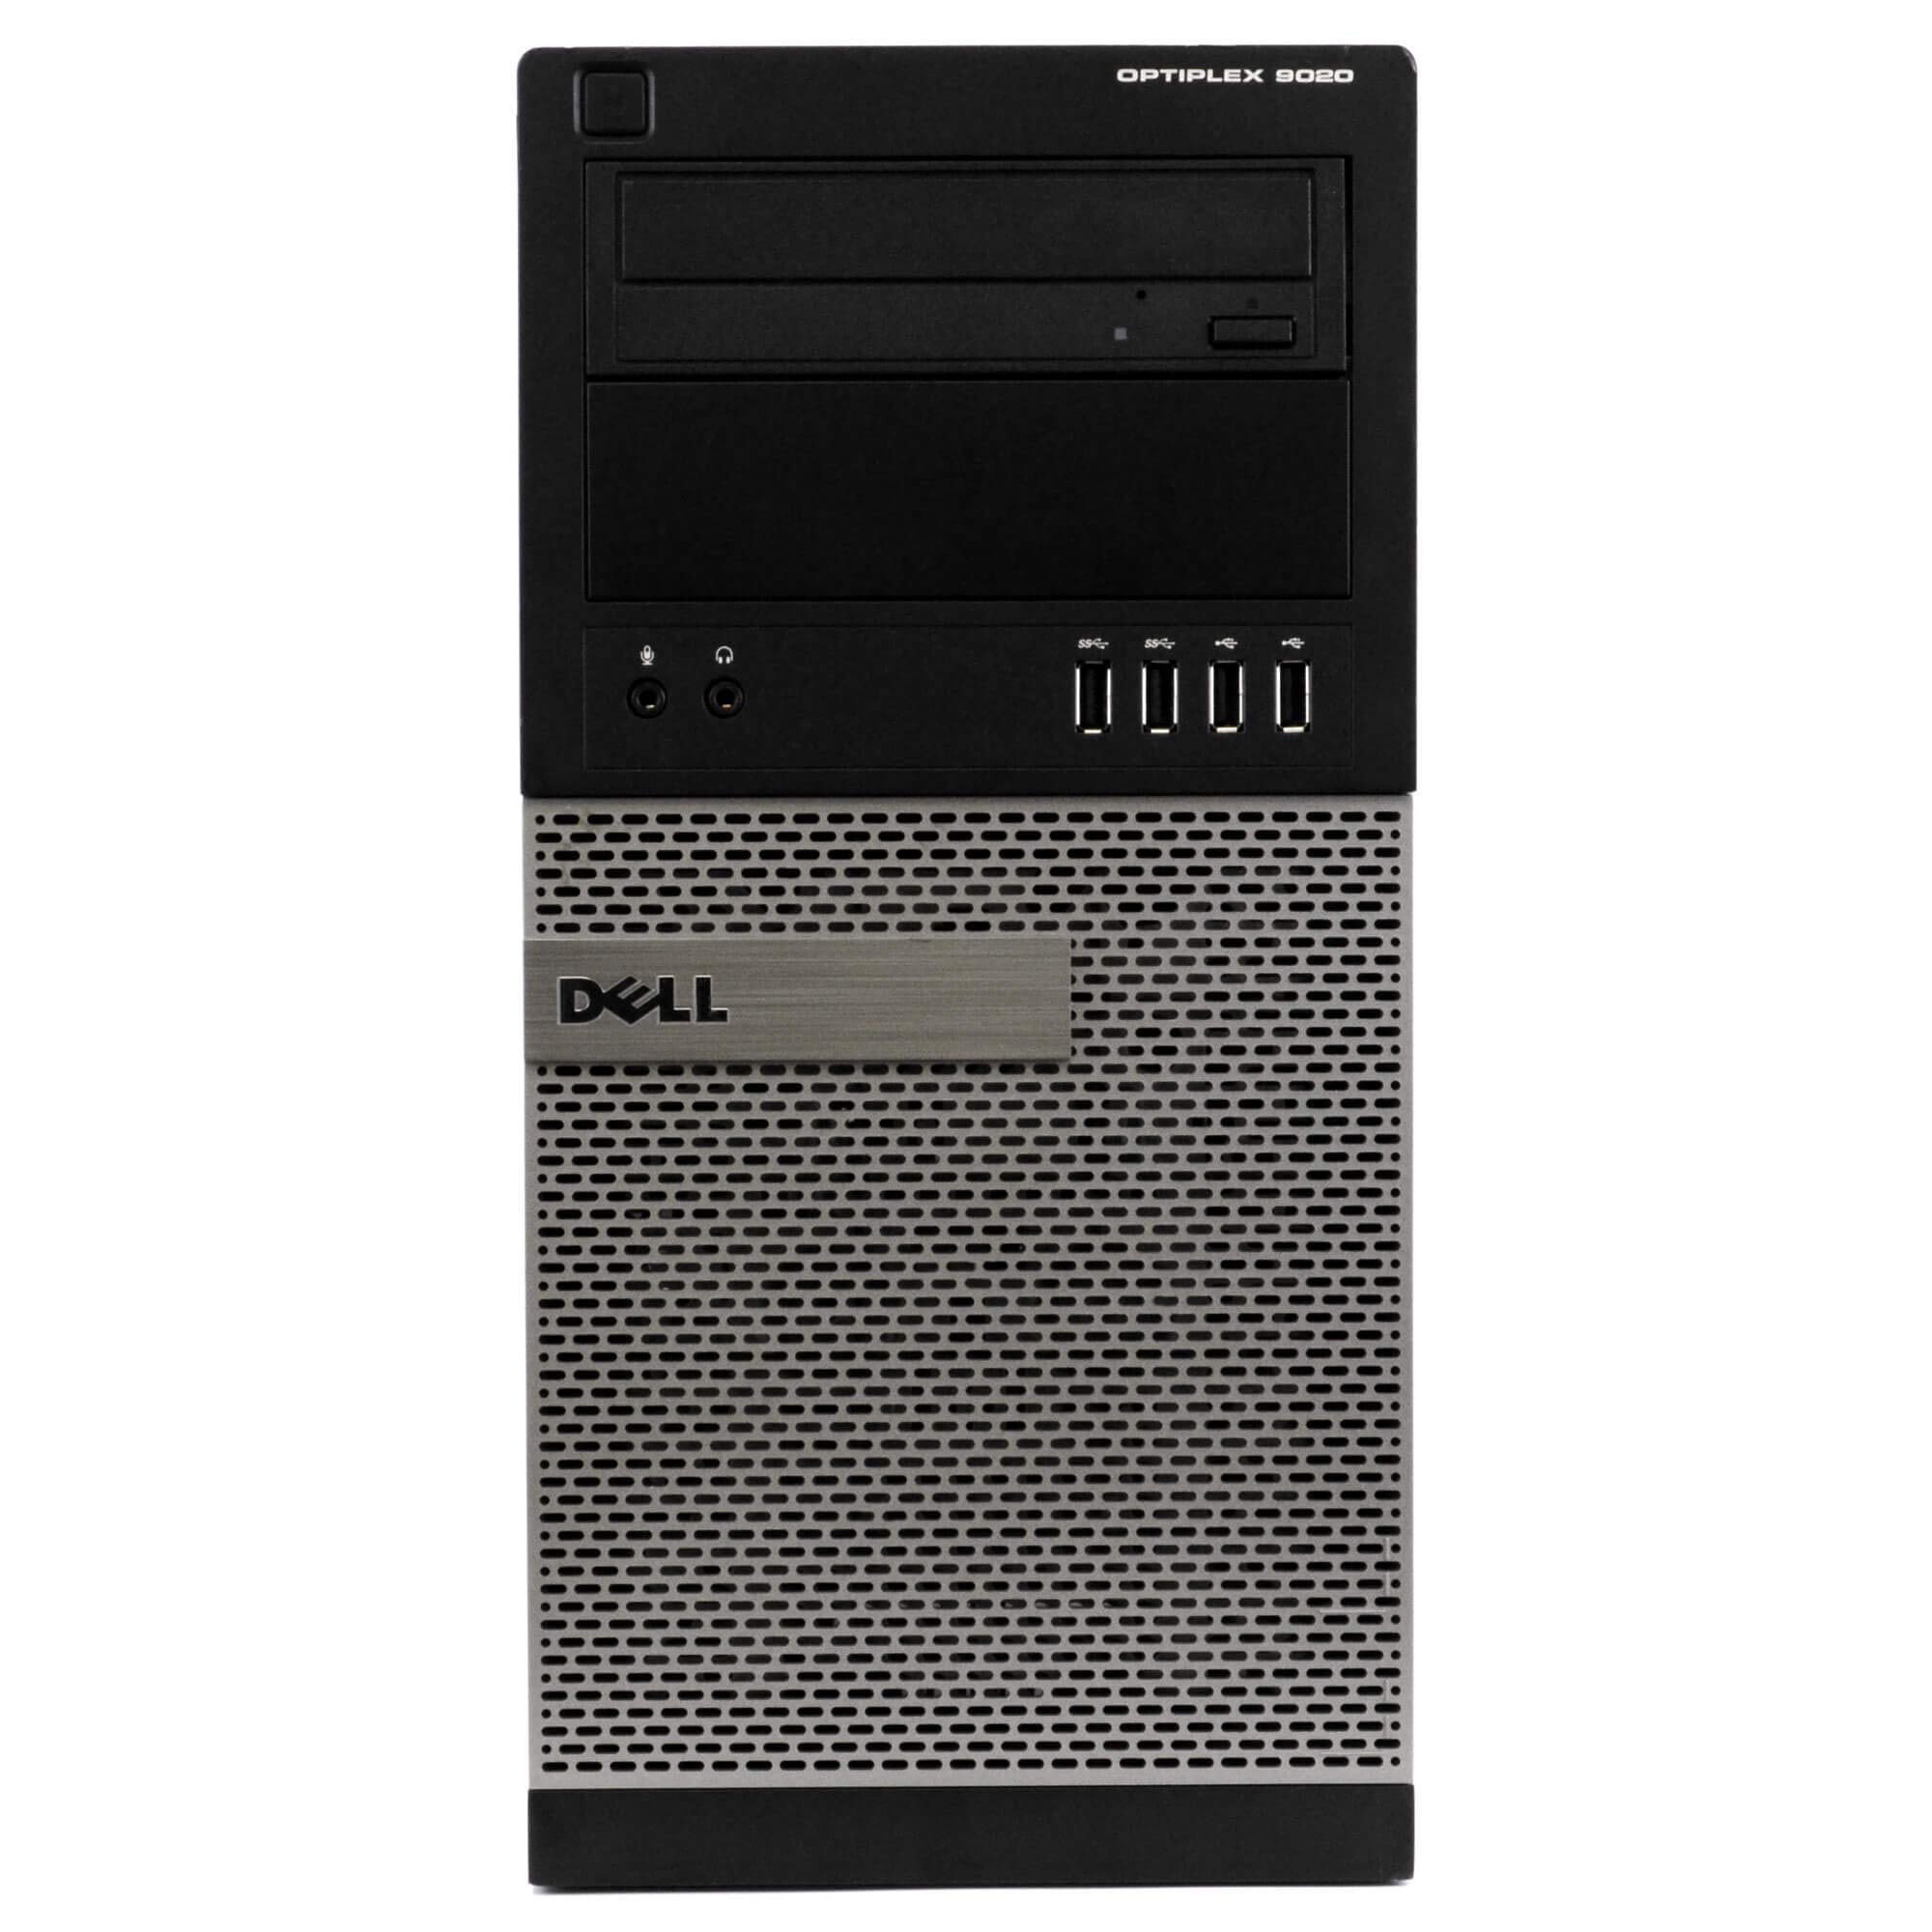 Dell Optiplex 9020 Mini Tower Desktop PC, Intel Core i5-4570-3.2 GHz, 32GB Ram, 1TB(1000GB) SSD Drive, WiFi, DVD-RW, Windows 10 Pro (Renewed)